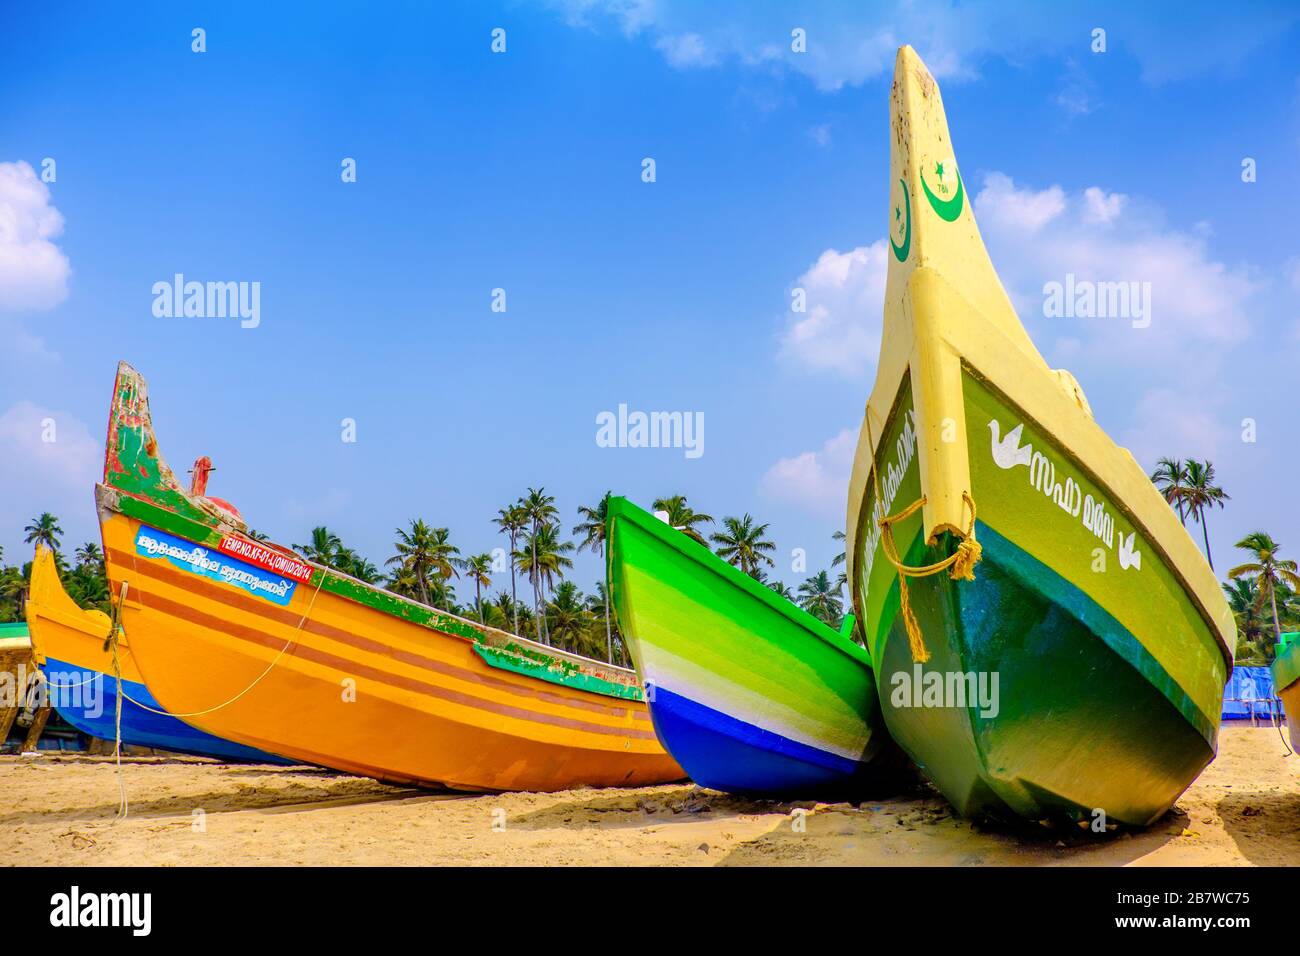 Barche da pesca dipinte con colori vivaci su una spiaggia sulla costa indiana Foto Stock